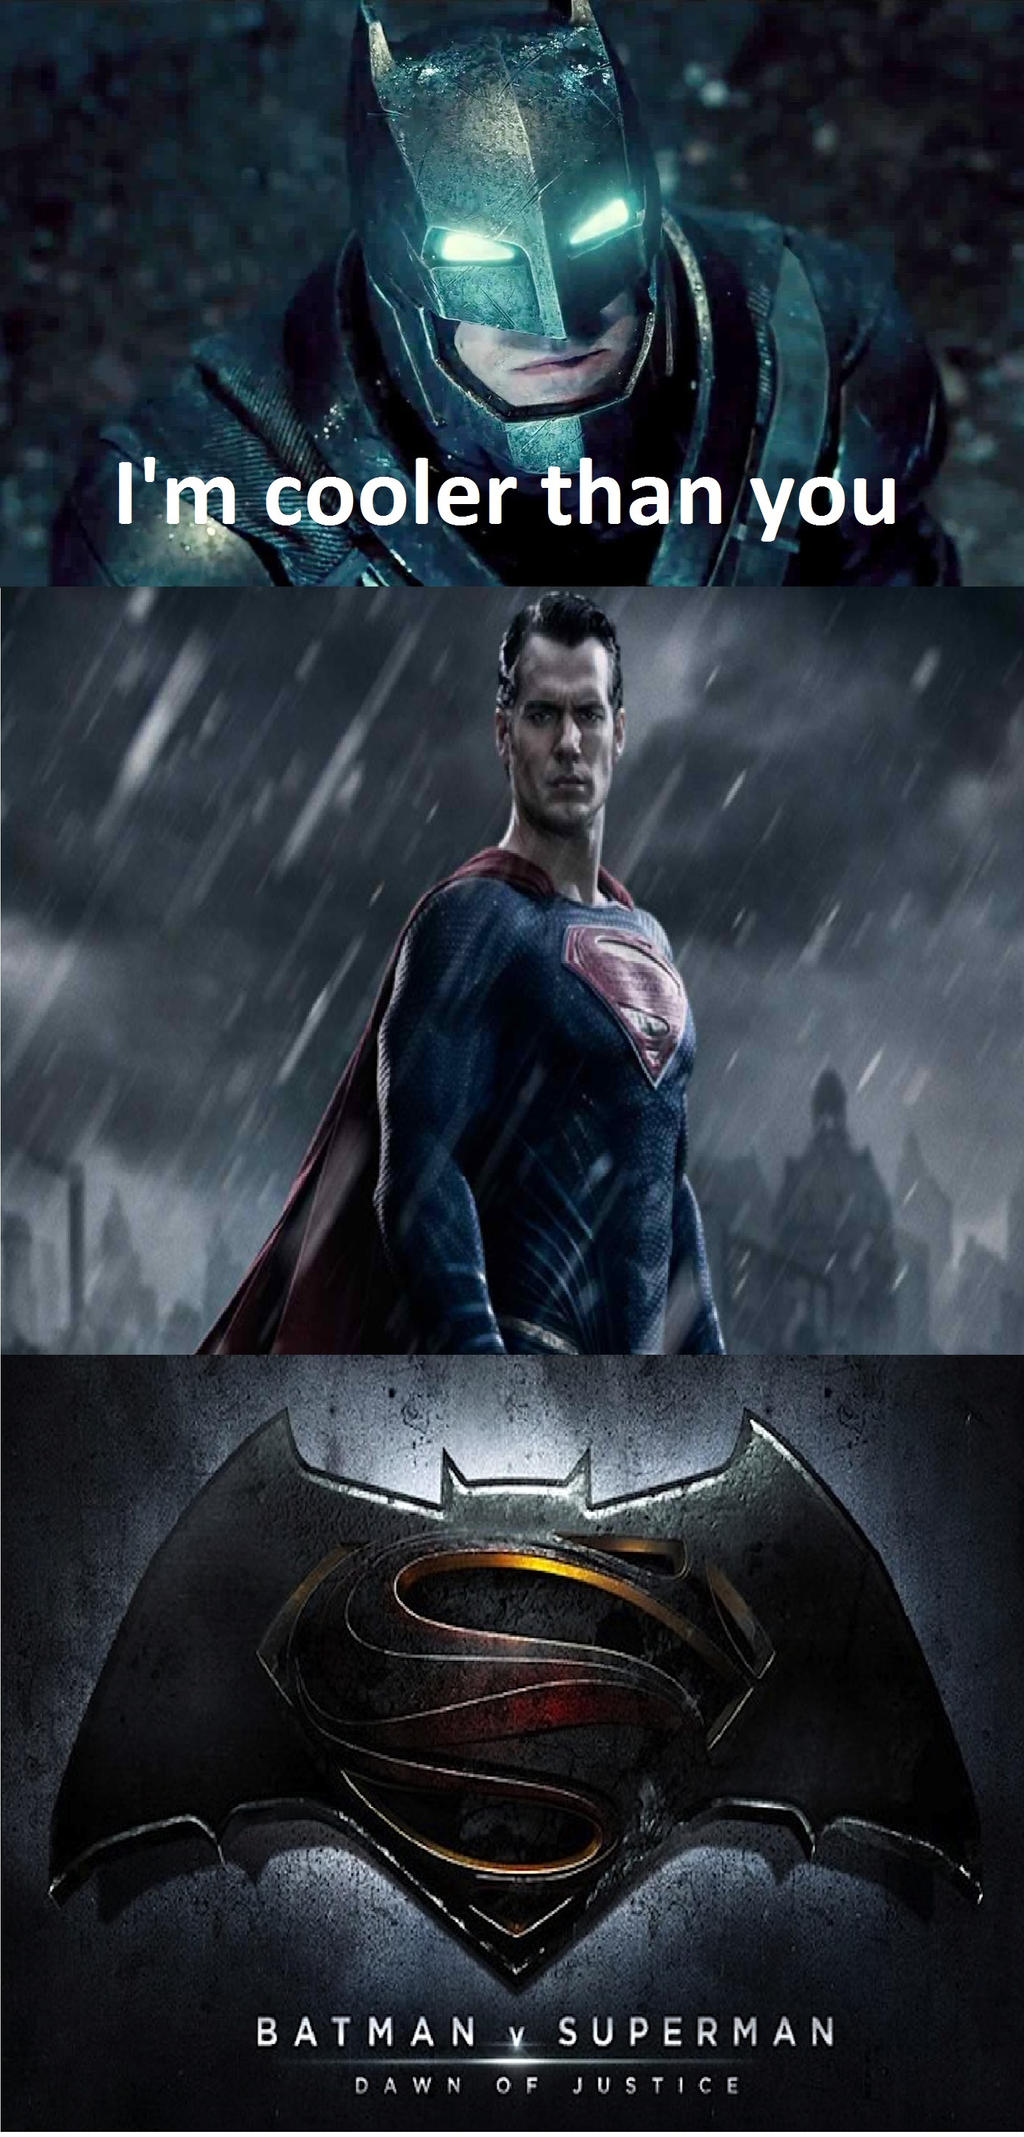 Batman/Superman meme by FlyGuyRob on DeviantArt